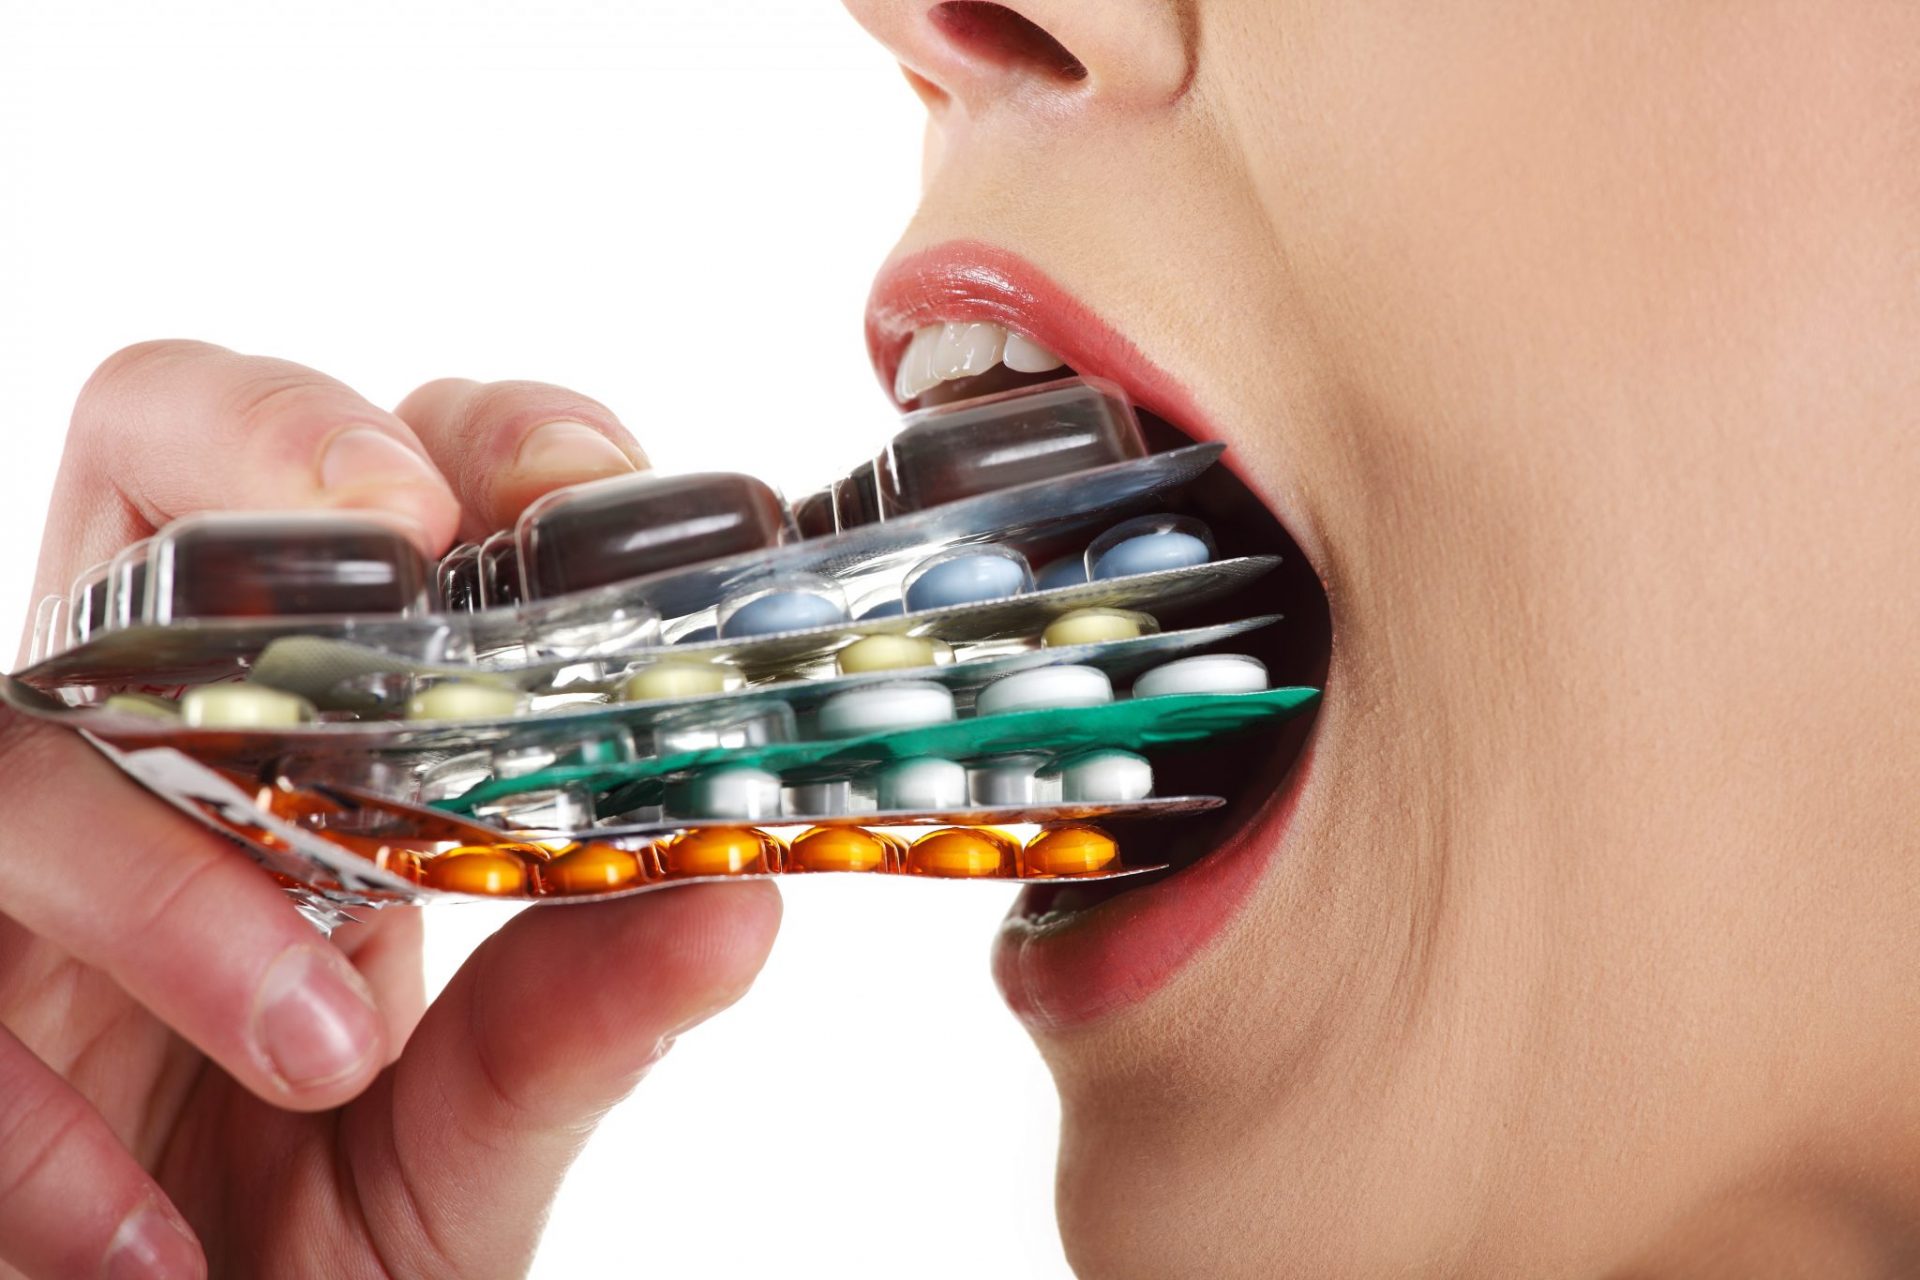 http://www.naturalhealth365.com/wp-content/uploads/2015/01/woman-eating-pills.jpg